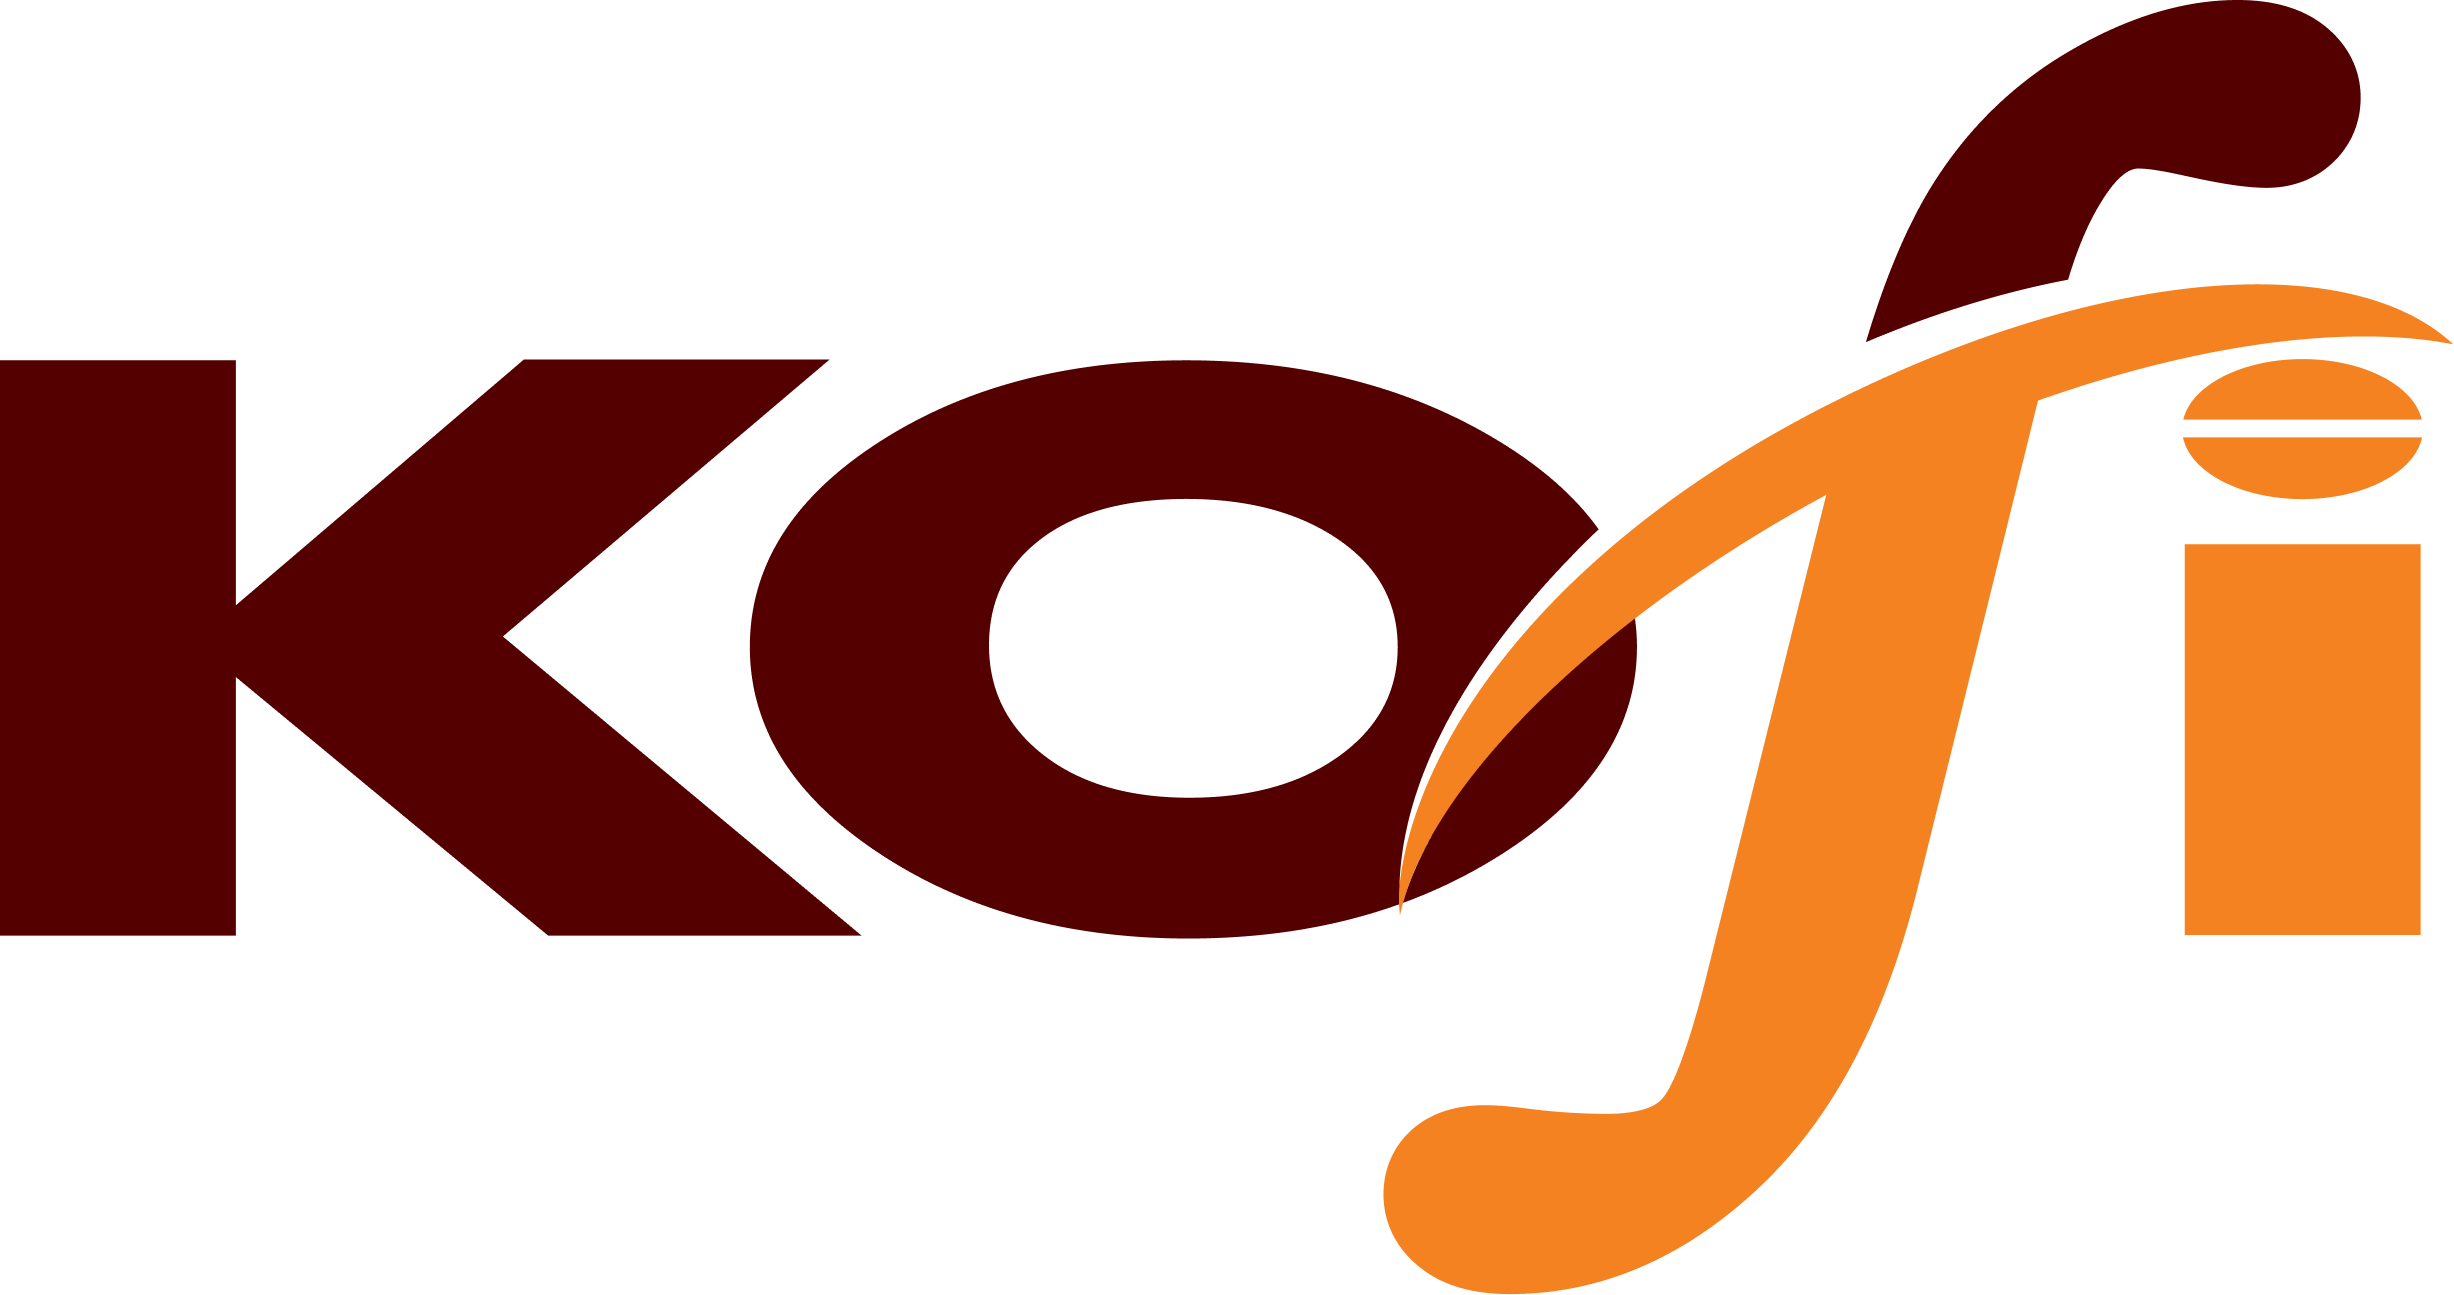 Kofi Co., LTD